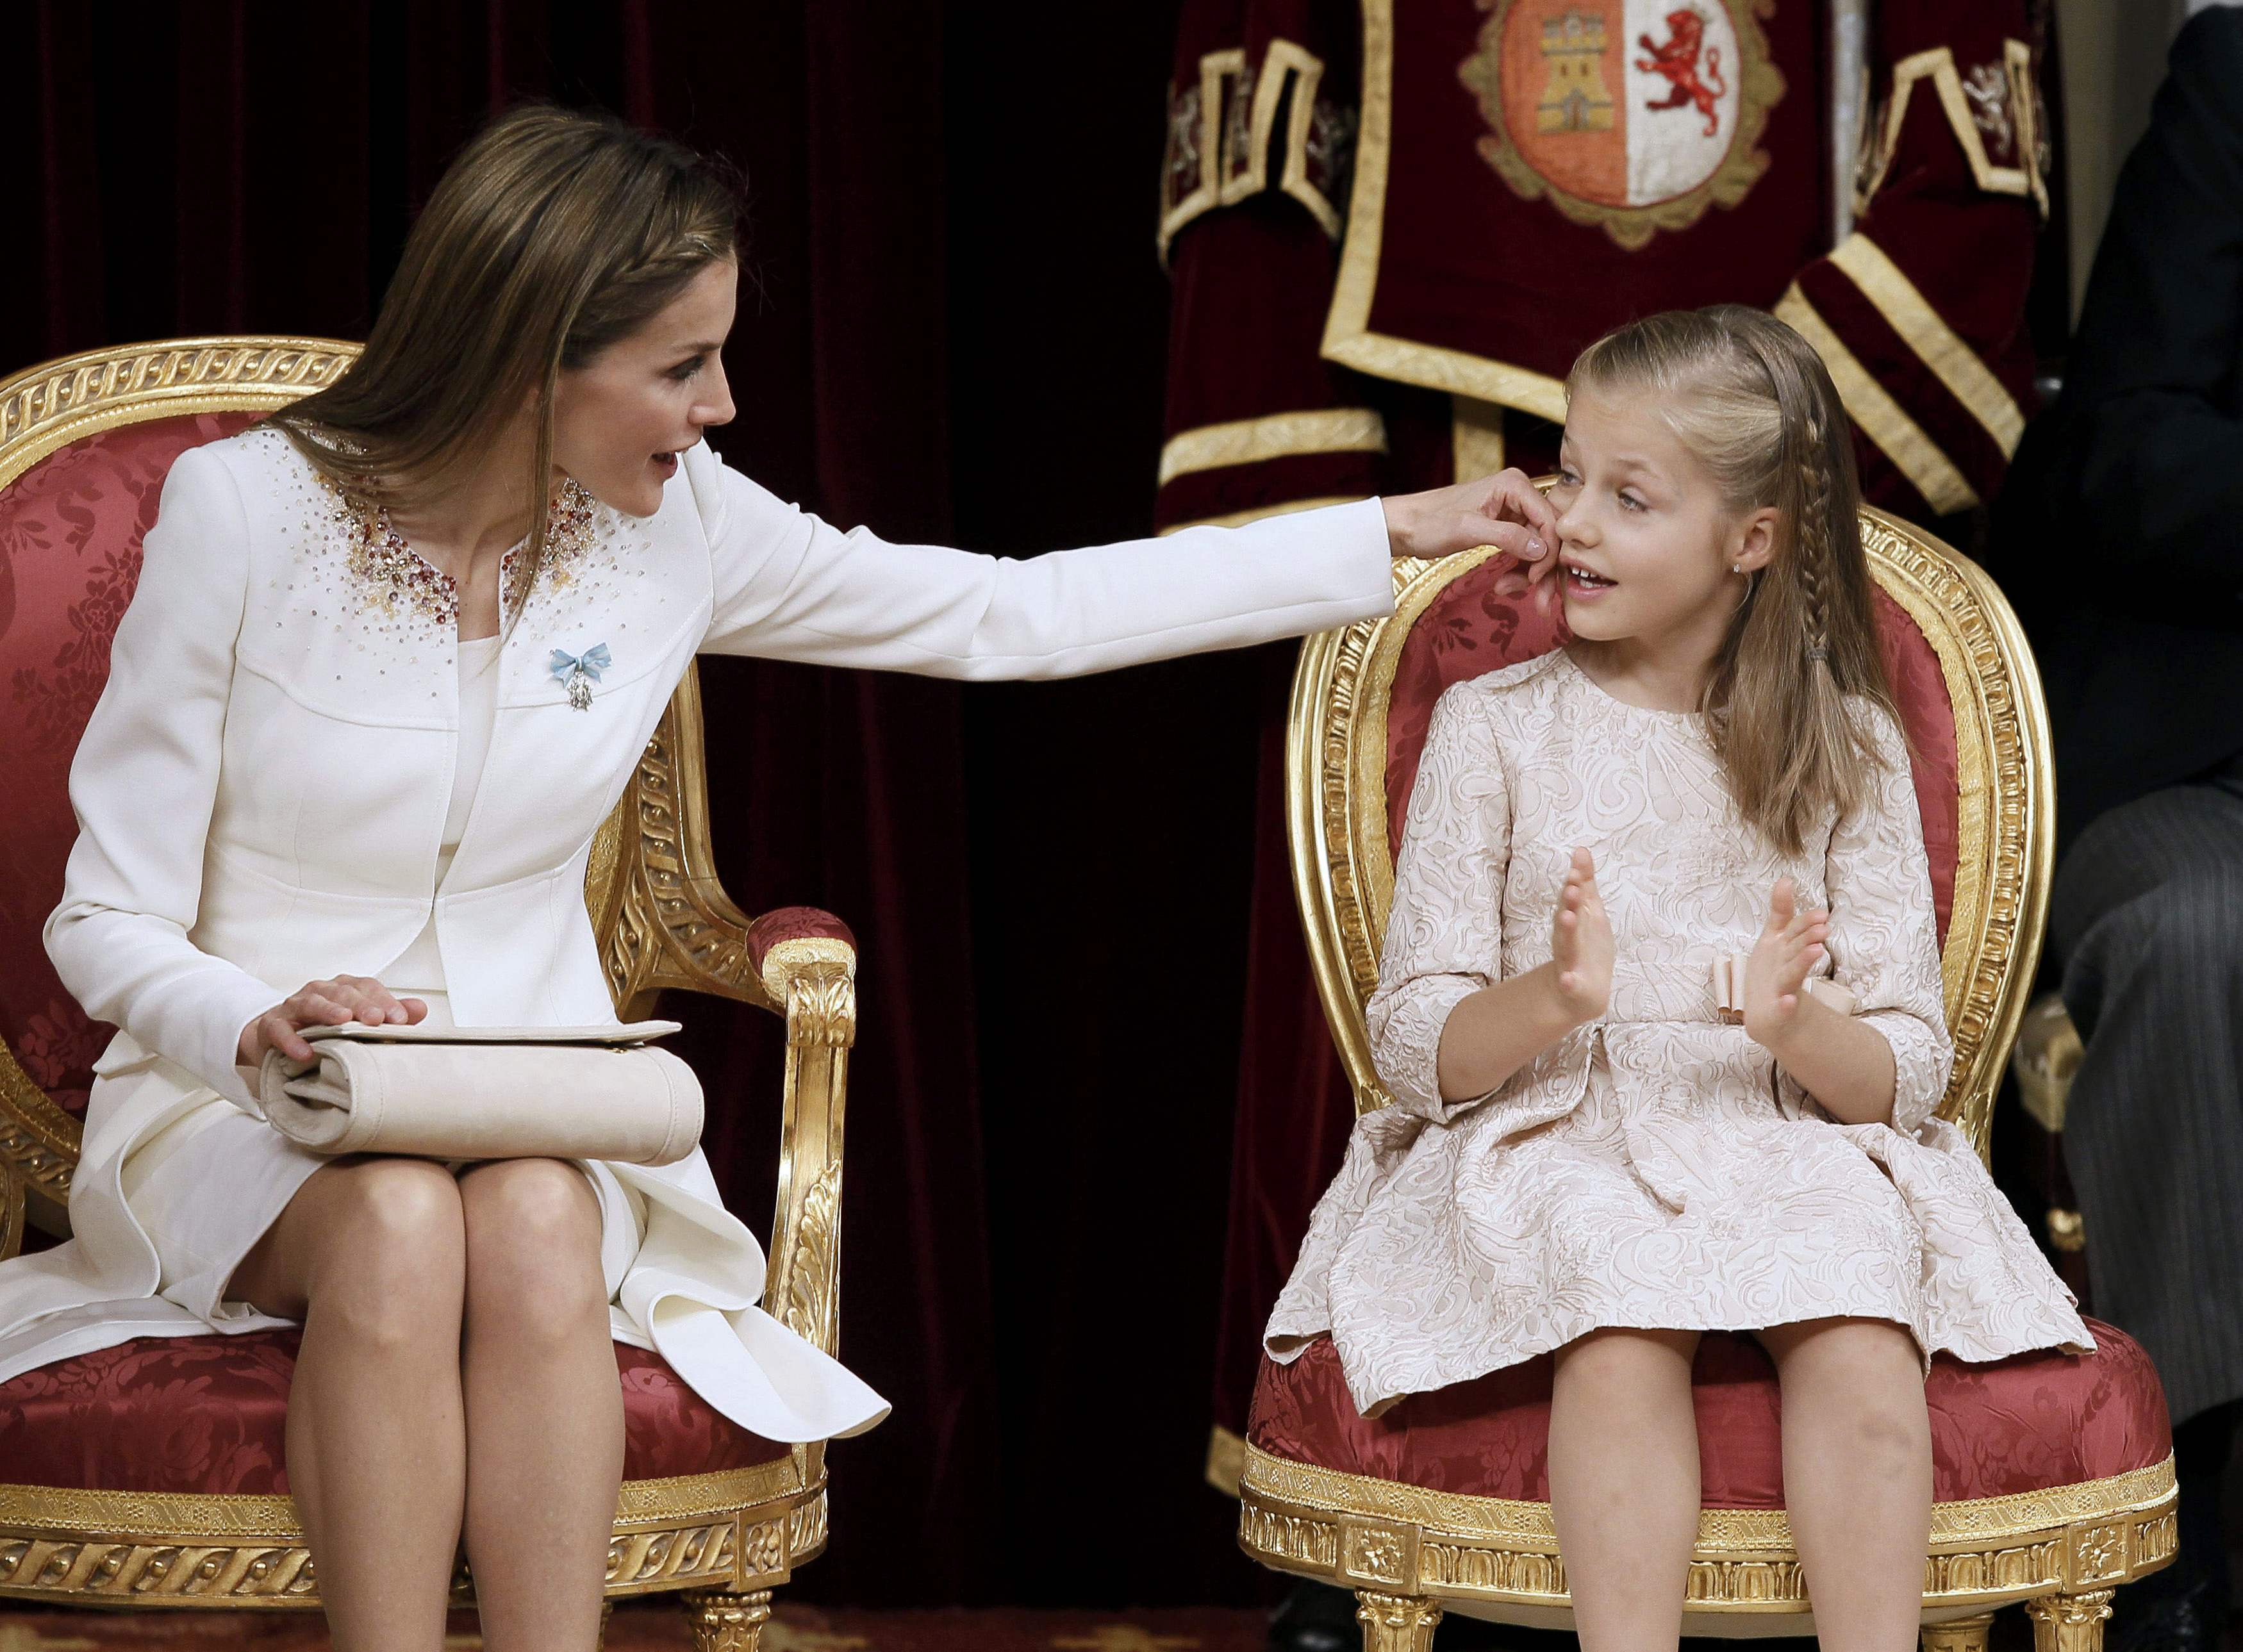 Guiños, besos y emoción en la proclamación de Felipe VI (Fotos)